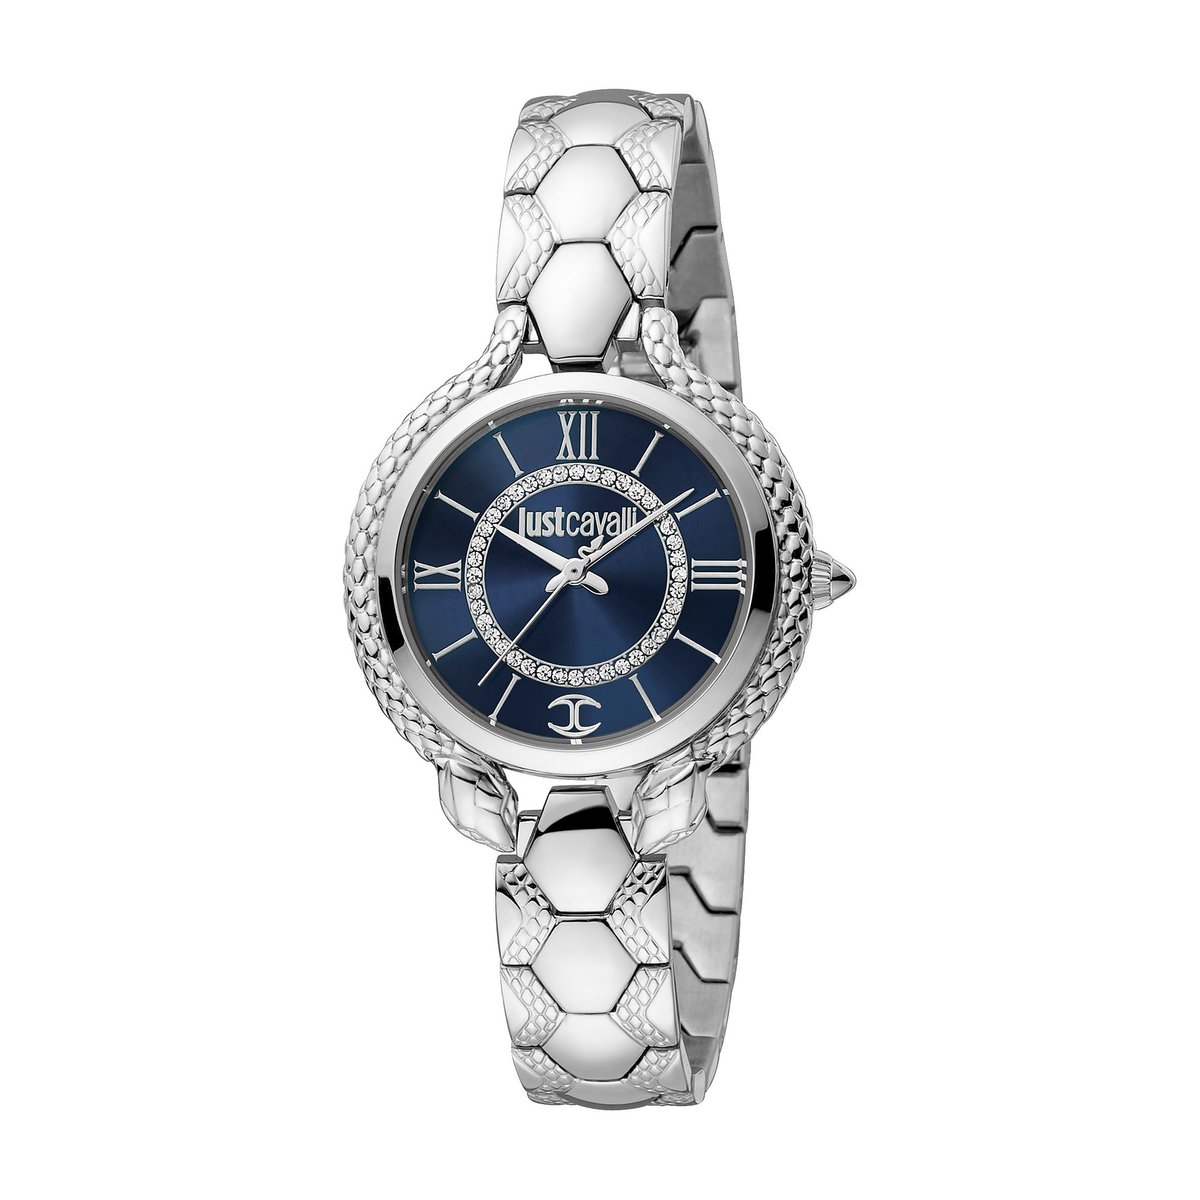 Just Cavalli Damen-Uhren Analog Quarz One Size Silber, Blau 32019806